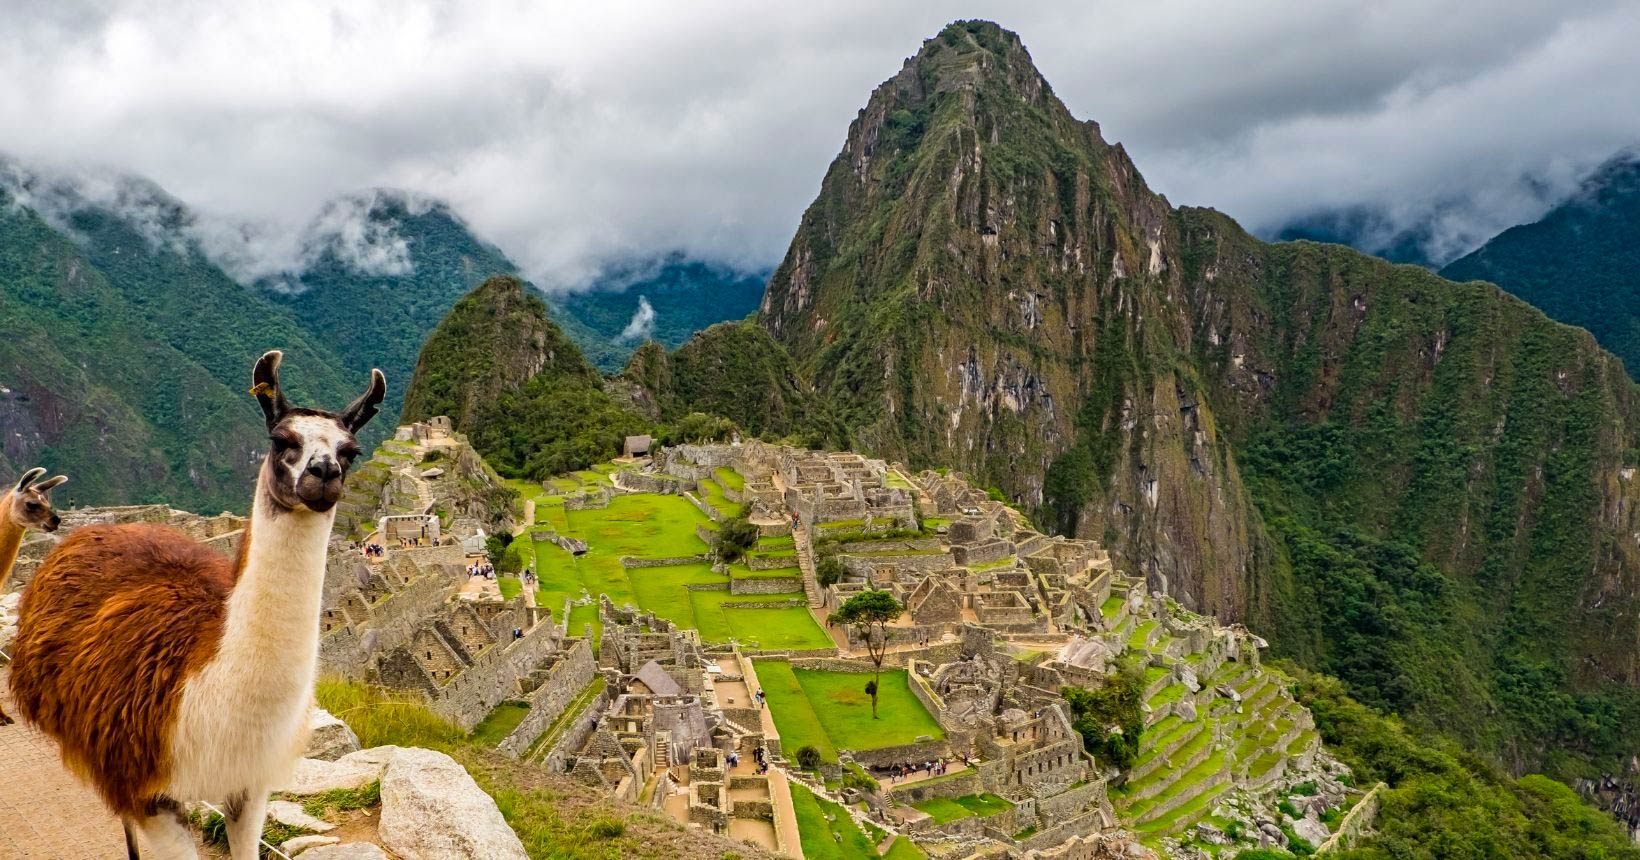 Peru! Passagens baratas da Latam para Lima ou Cusco a partir de R$ 982